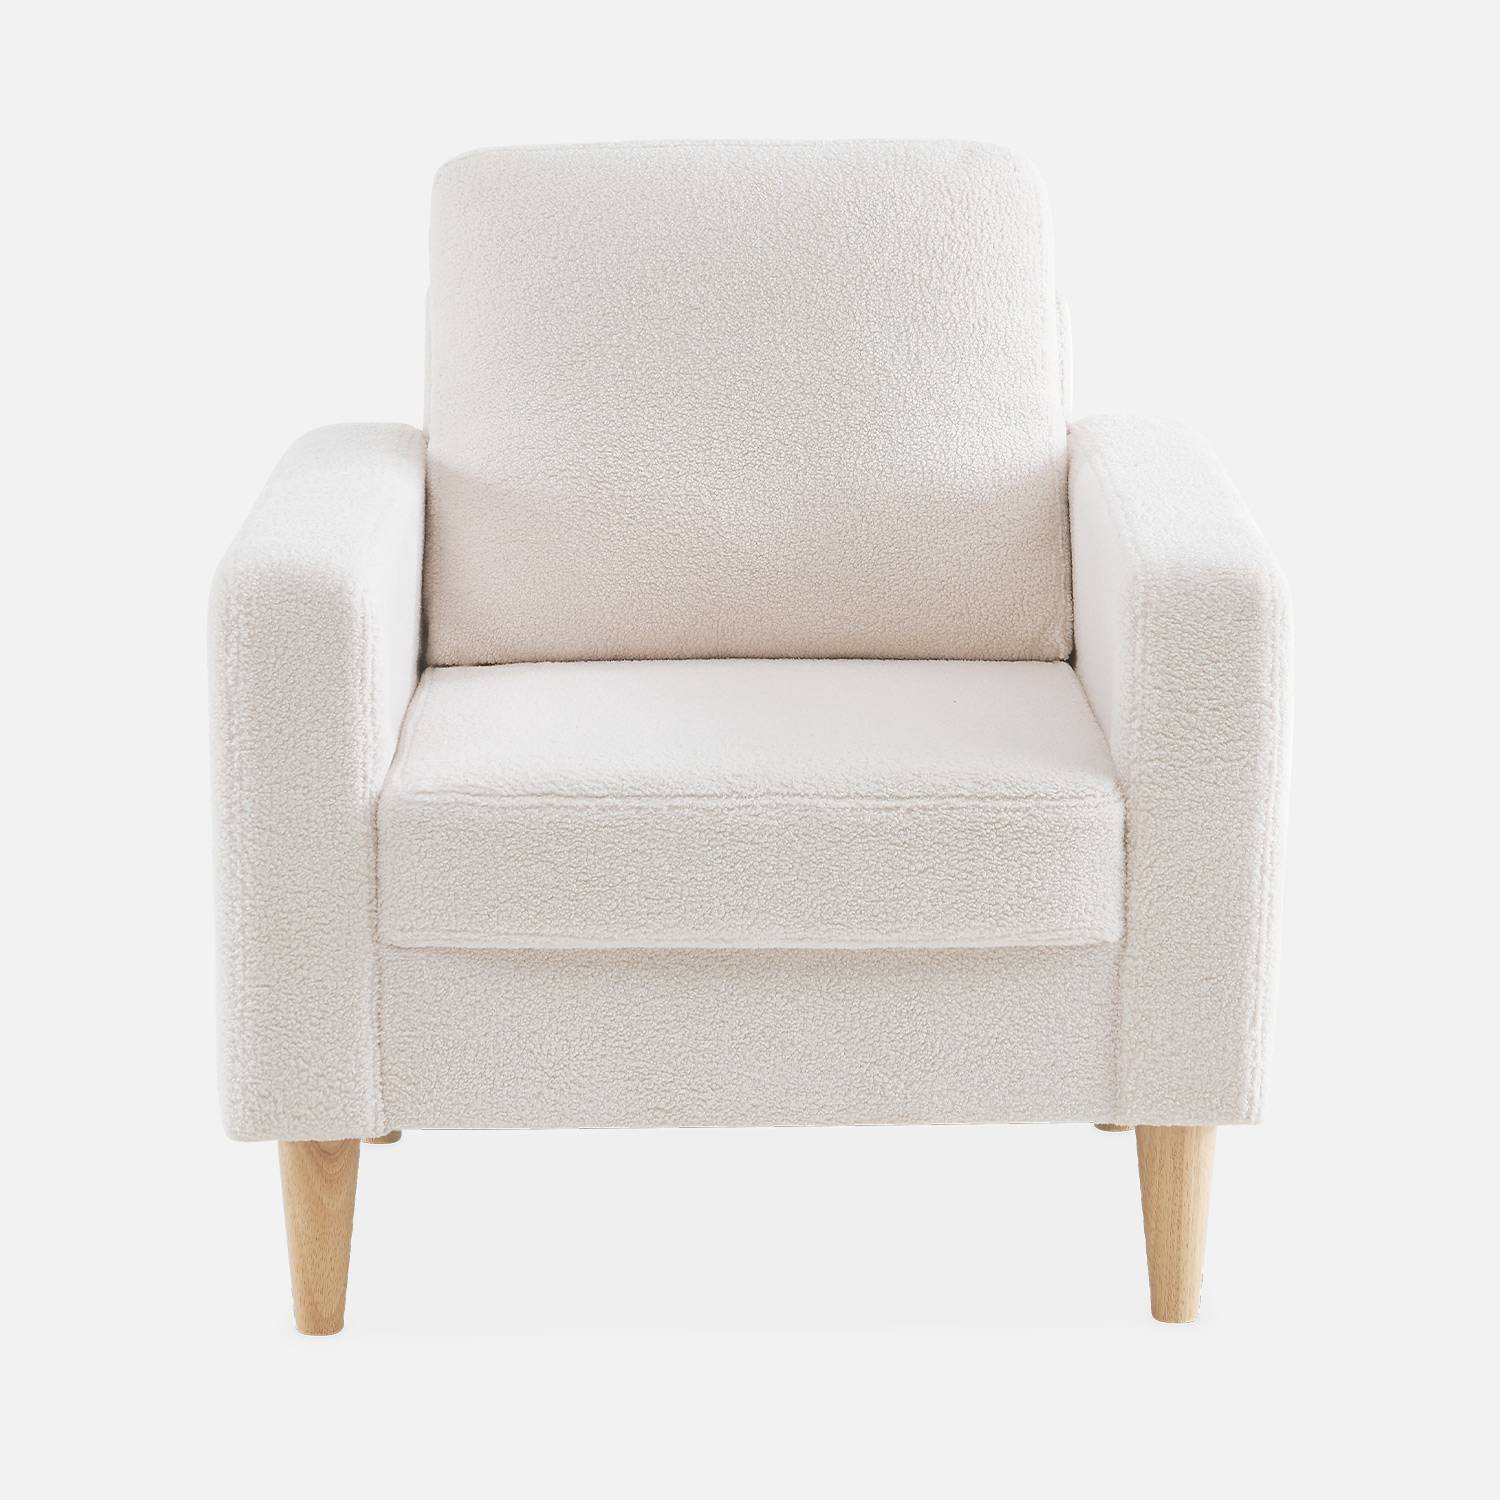 Witte fauteuil van boucléstof - Bjorn - 1-zits sofa, rechte houten poten Photo5